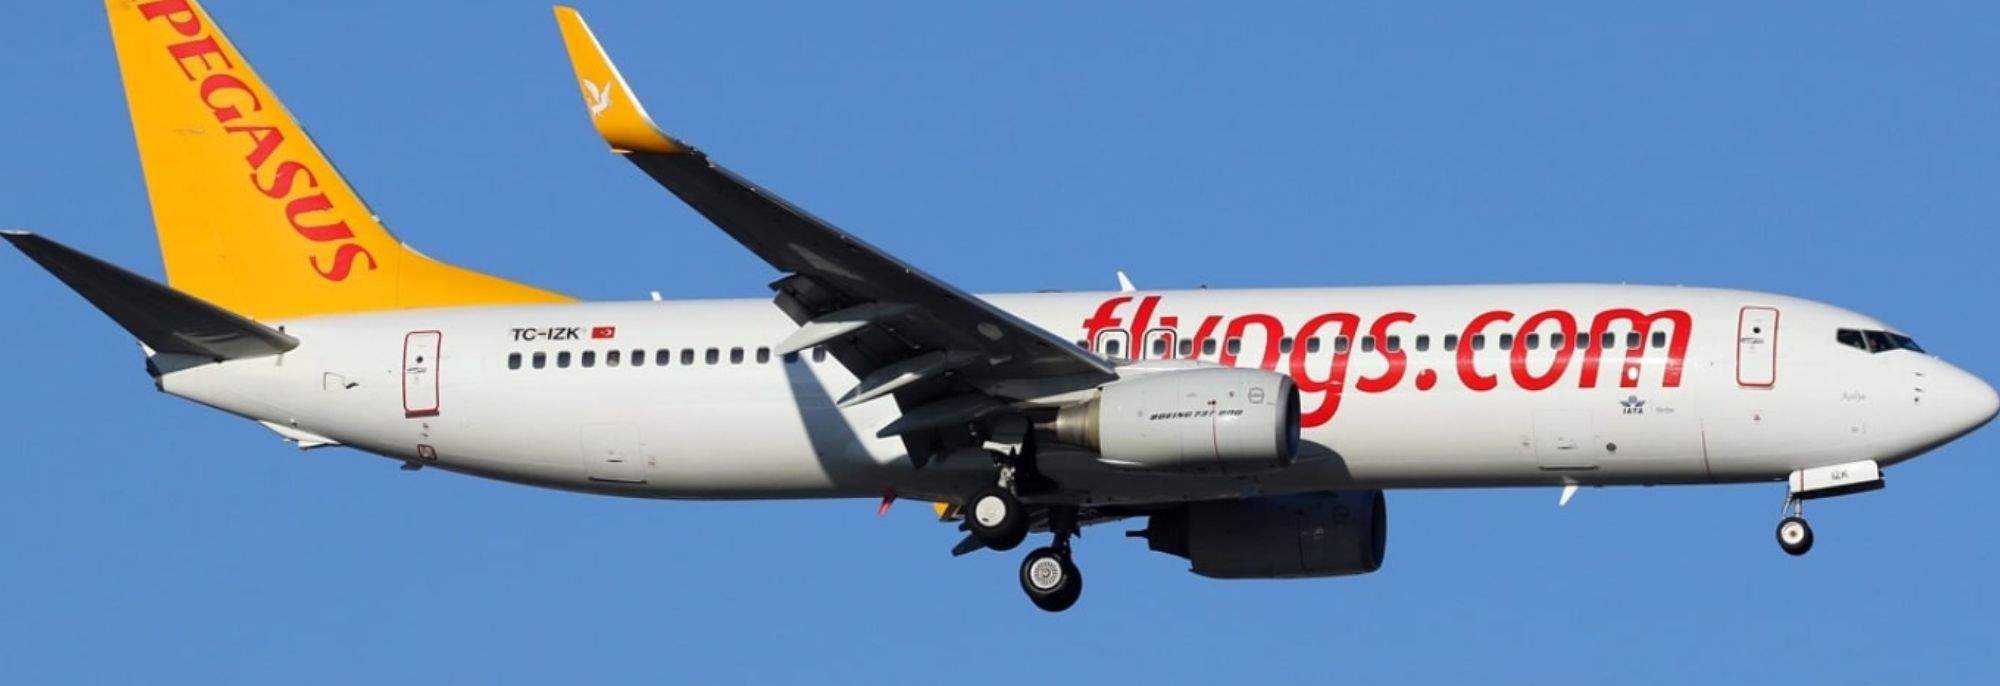 Forbindelse Tyrkia-Polen: Pegasus Airlines lander på Krakow lufthavn